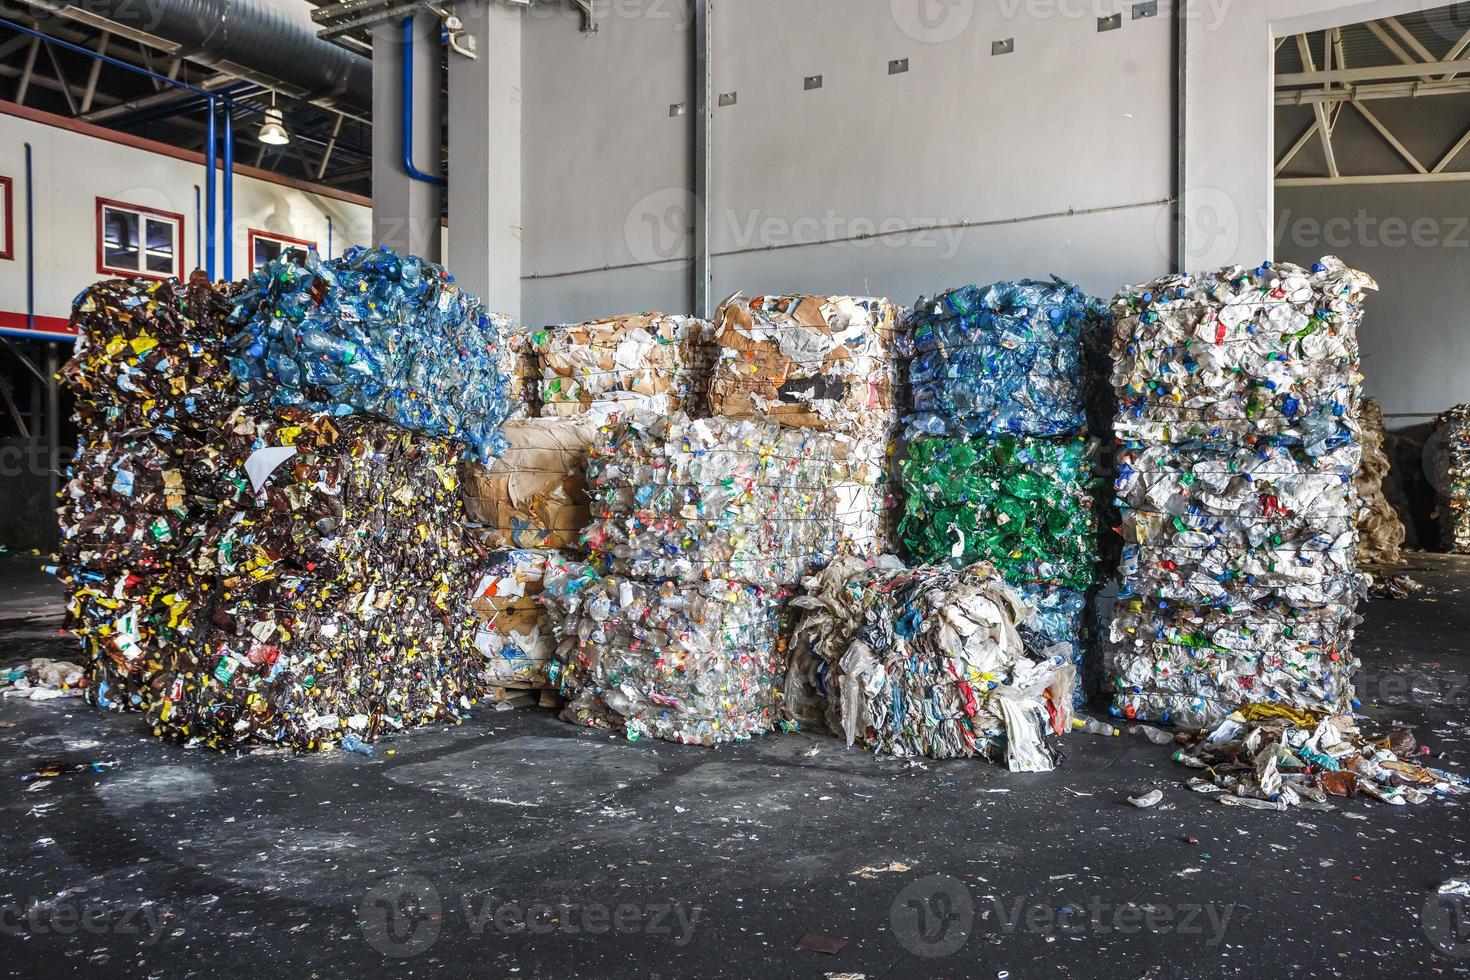 balas de plástico de basura en la planta de tratamiento de residuos. reciclaje separado y almacenamiento de basura para su posterior eliminación, clasificación de basura. negocio de clasificación y tratamiento de residuos. foto